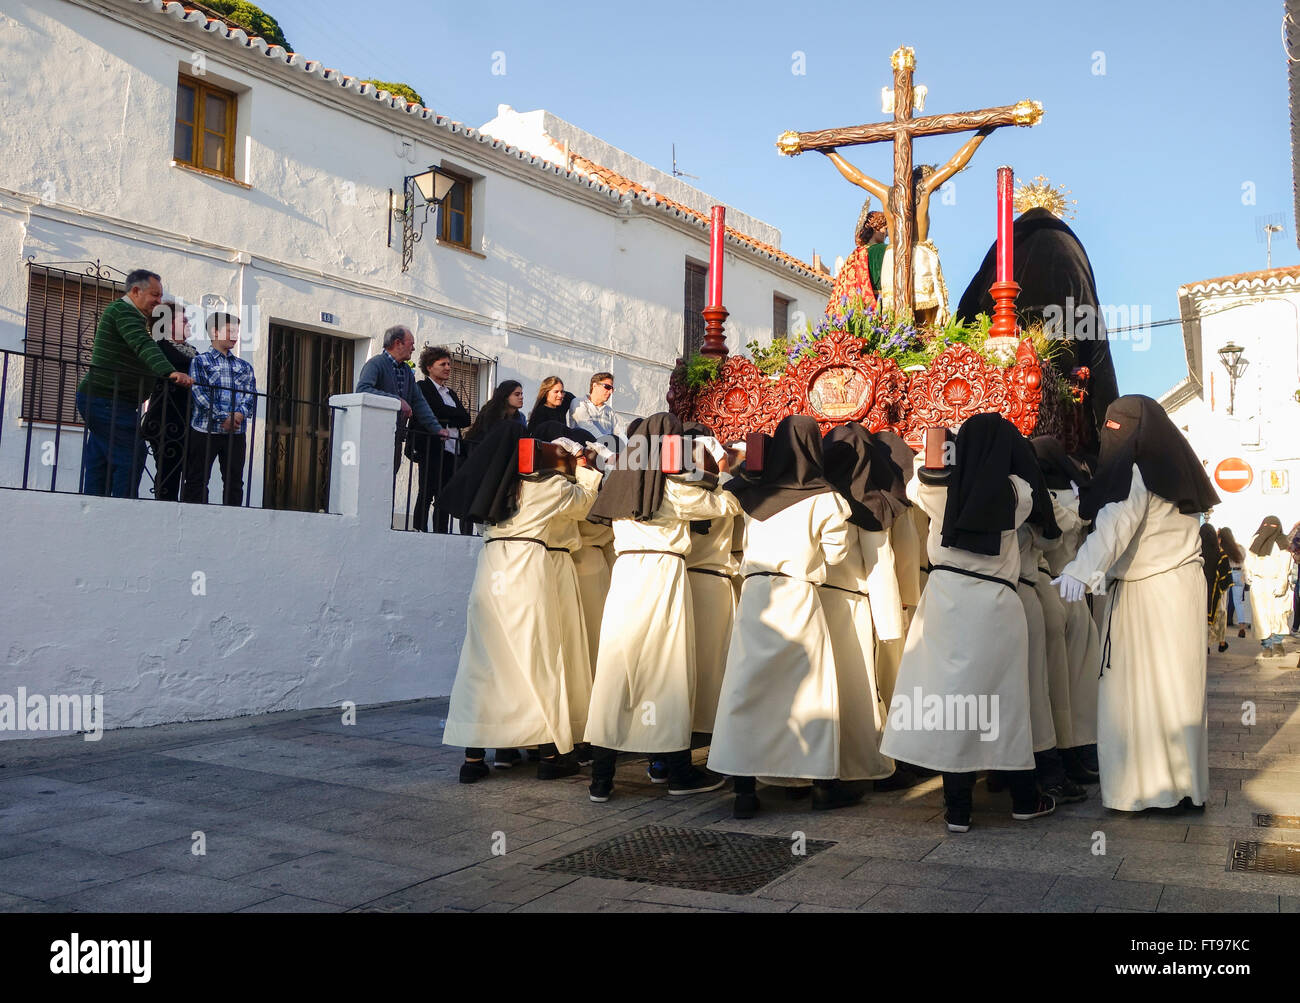 Mijas, Málaga, Andalucía. 25 de marzo de 2016. Los penitentes llevando el flotador. Procesión del Viernes santo en pueblo blanco andaluz de Mijas, provincia de Málaga. Crédito: Perry van Munster/ Alamy Live News Foto de stock